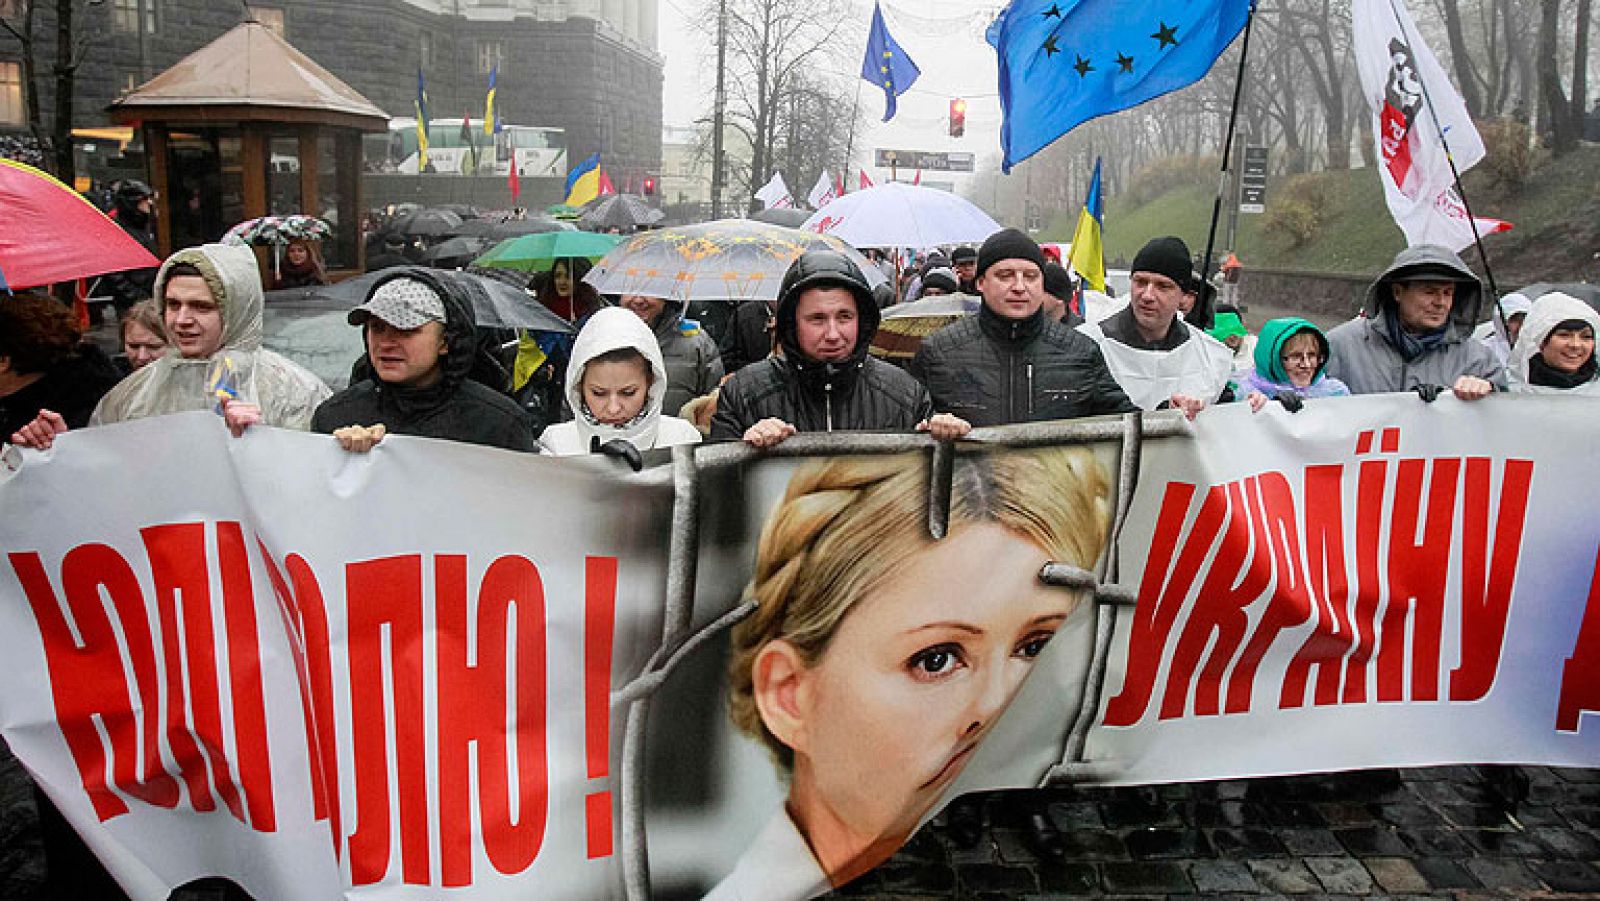  La ex primera ministra y líder opositora de Ucrania, Yulia Timoshenko, ha iniciado una huelga de hambre indefinida para presionar al presidente del país, Viktor Yanukovich, a firmar el acuerdo comercial con la Unión Europea.  Partidarios de la integración de Ucrania en la Unión Europea reanudaron en Kiev los piquetes frente a la sede del Gobierno ucraniano.